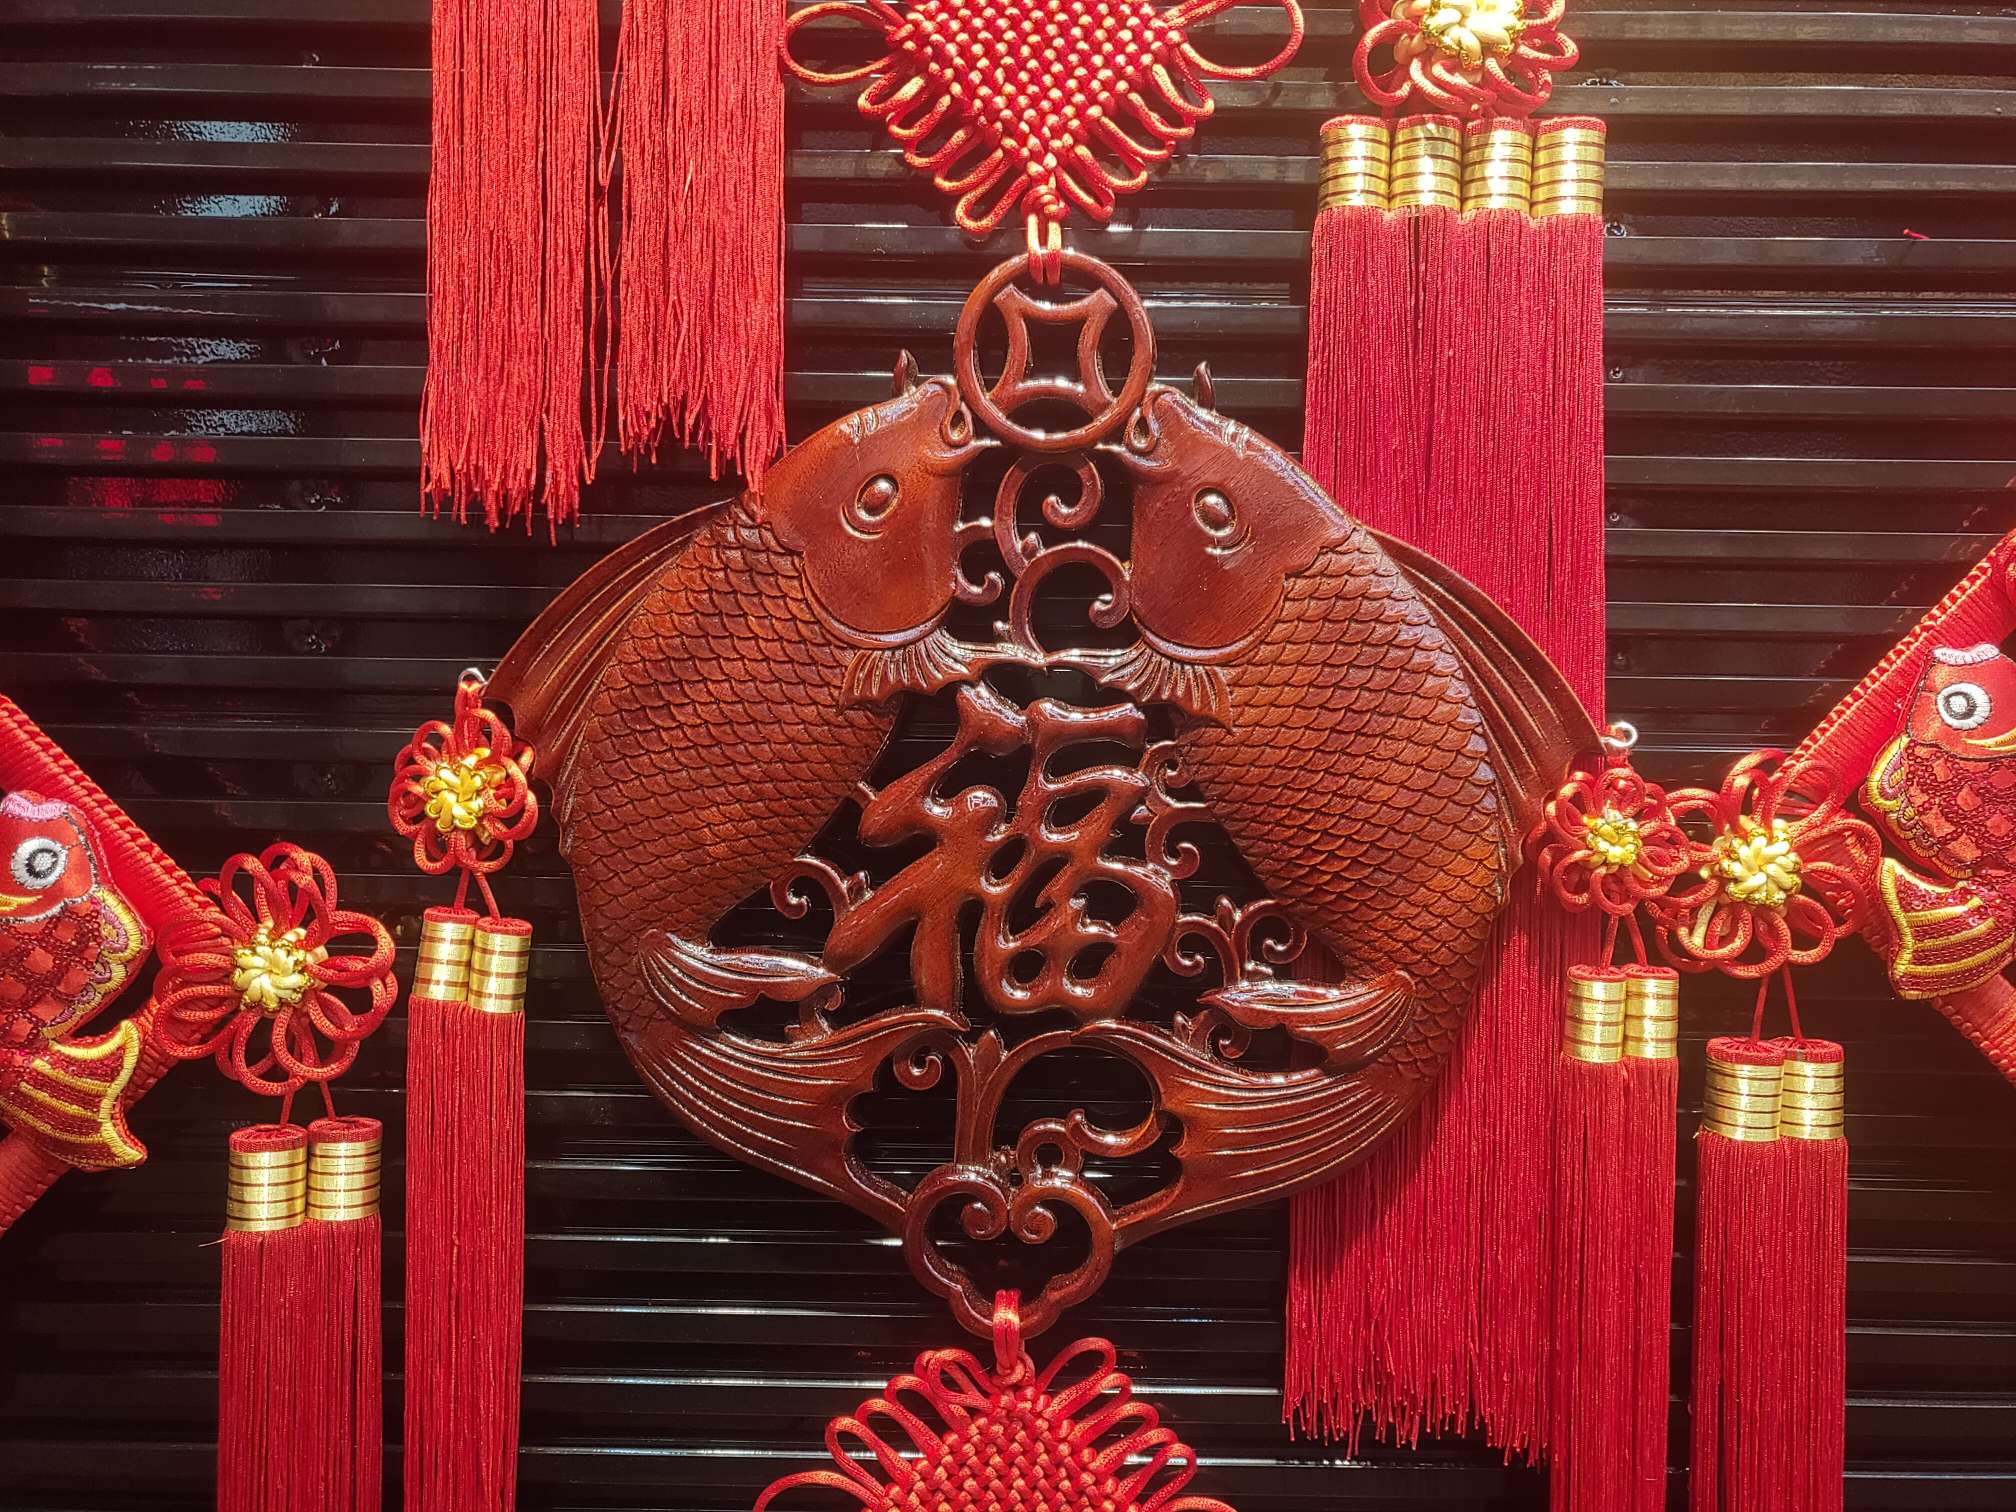 40#方形木雕44春节喜庆用品节日用品红木精品图